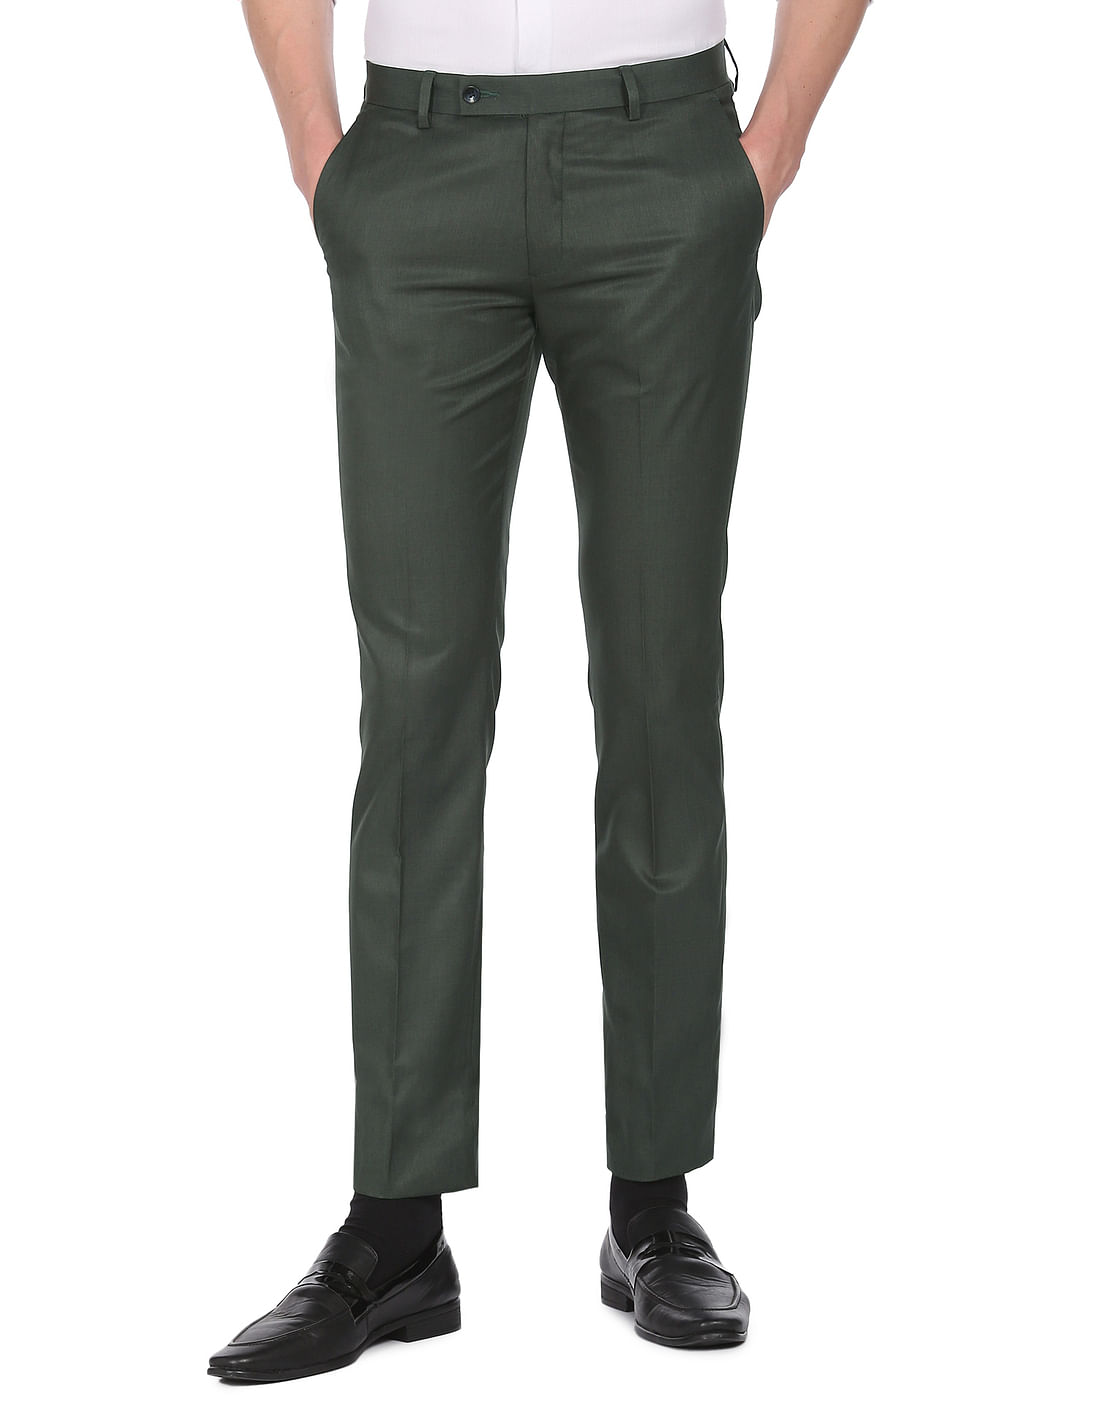 Green : Men's Chino Pants : Target